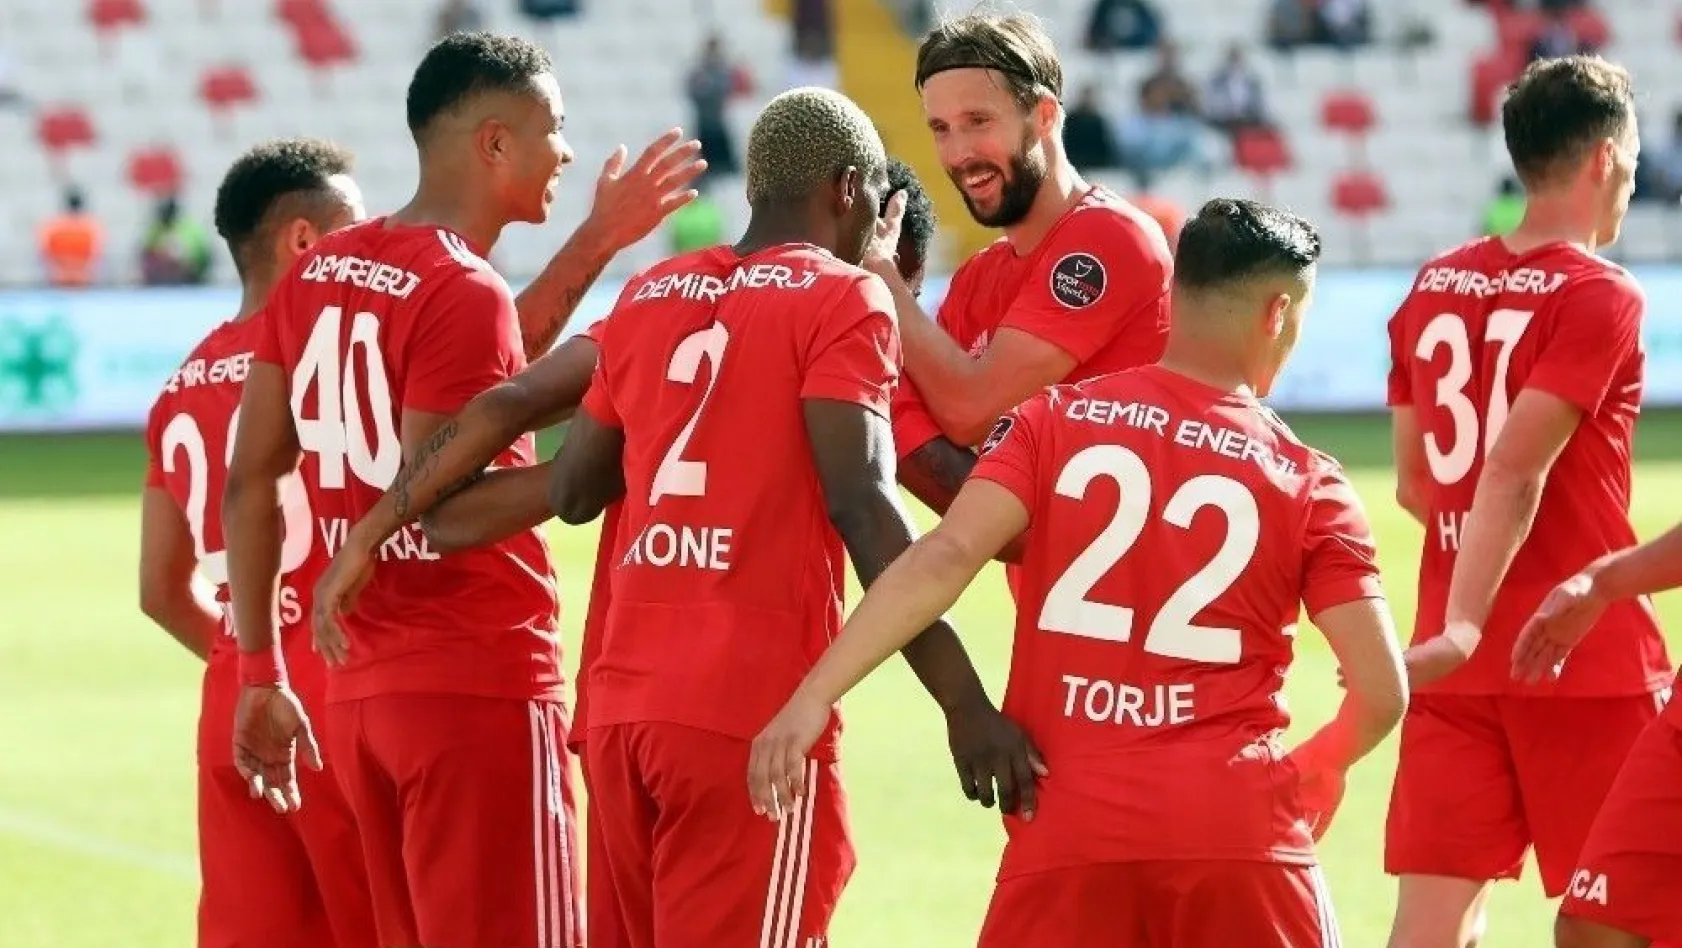 Spor Toto Süper Lig: DG Sivasspor: 2 - Bursaspor: 0 (Maç sonucu)
